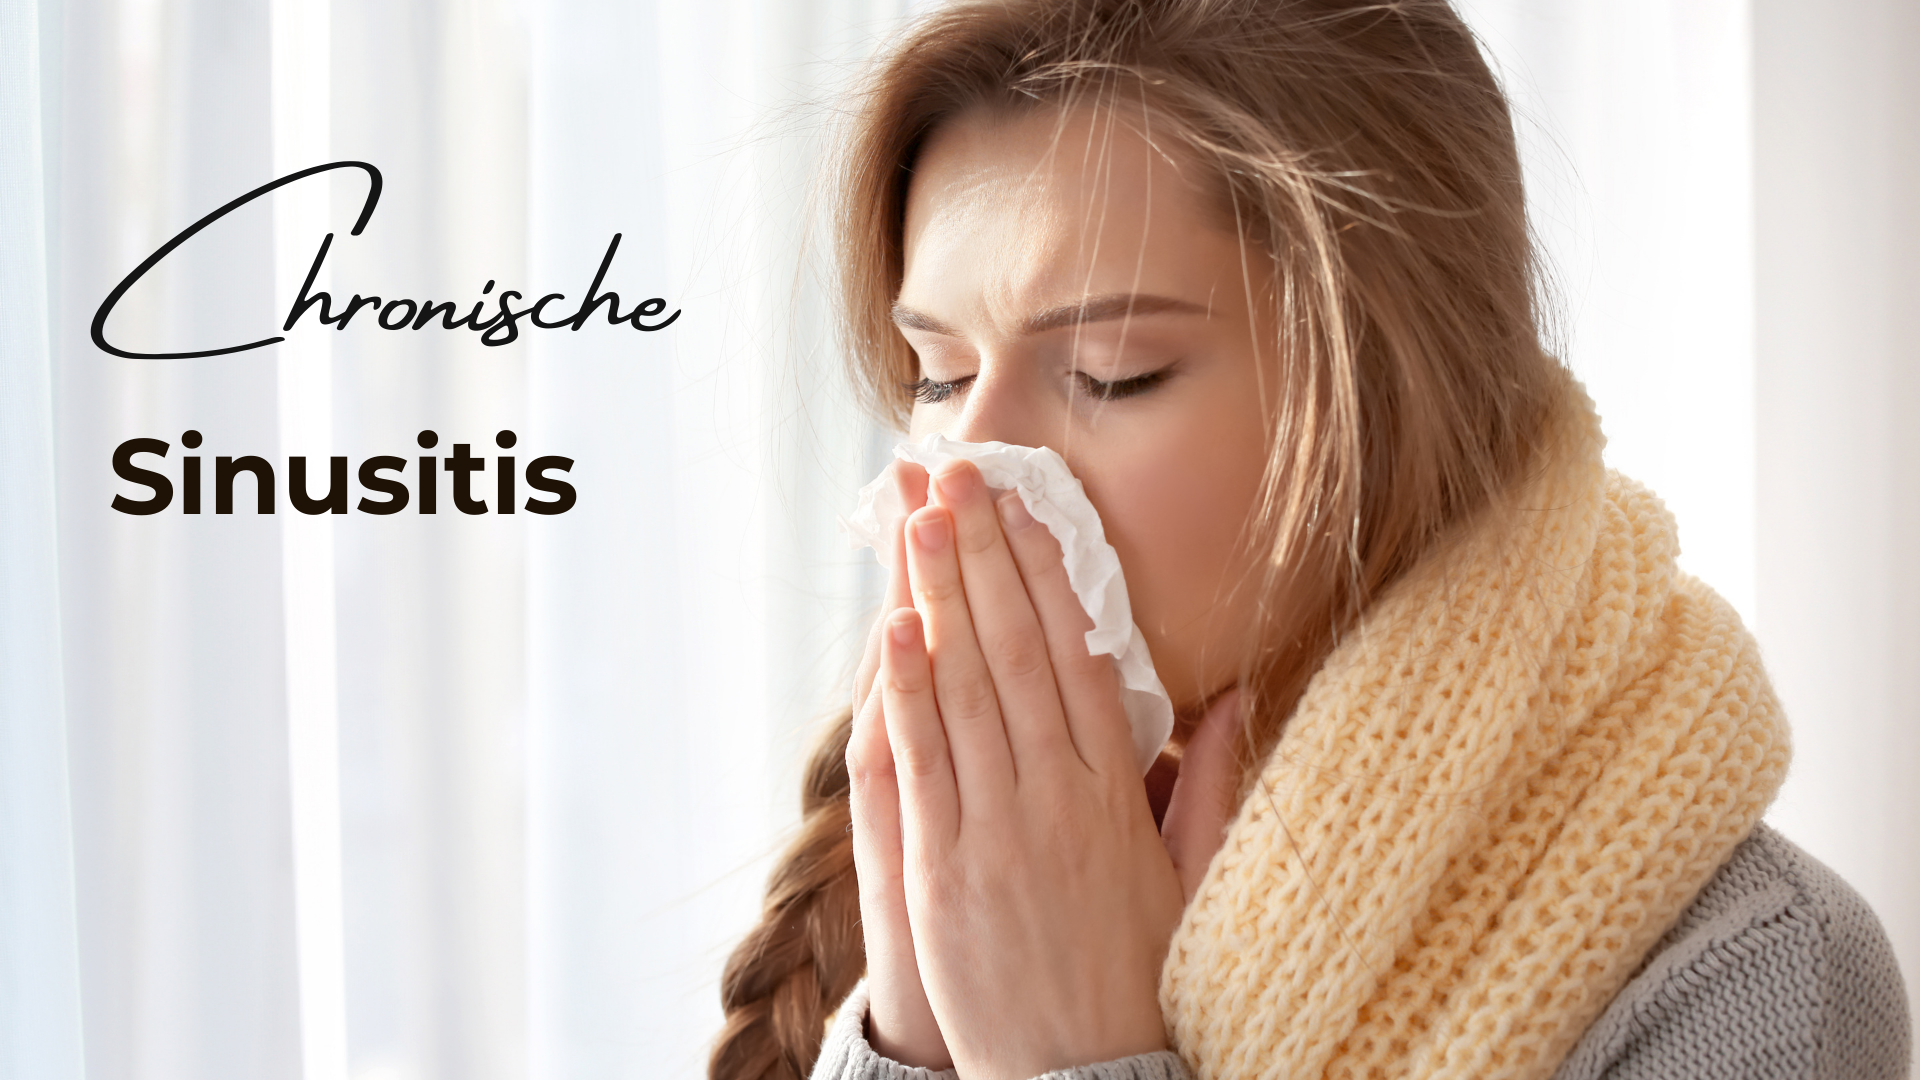 Mehr über den Artikel erfahren Sinusitis in Dauerschleife: Die endlos verstopfte Nase